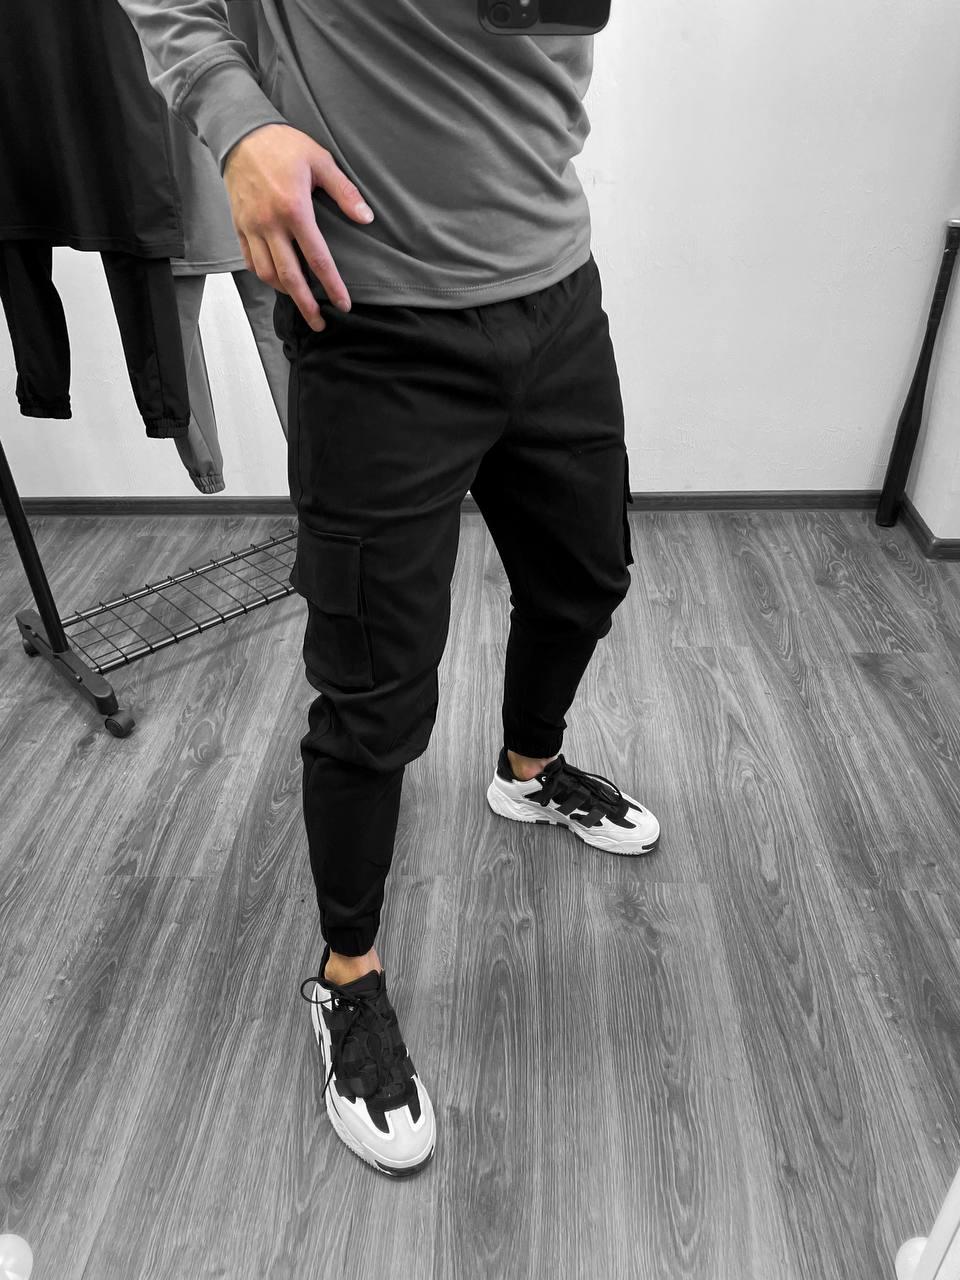 Чоловічі штани чорні Карго Кларк | Тактичні штани чоловічі BW 6666